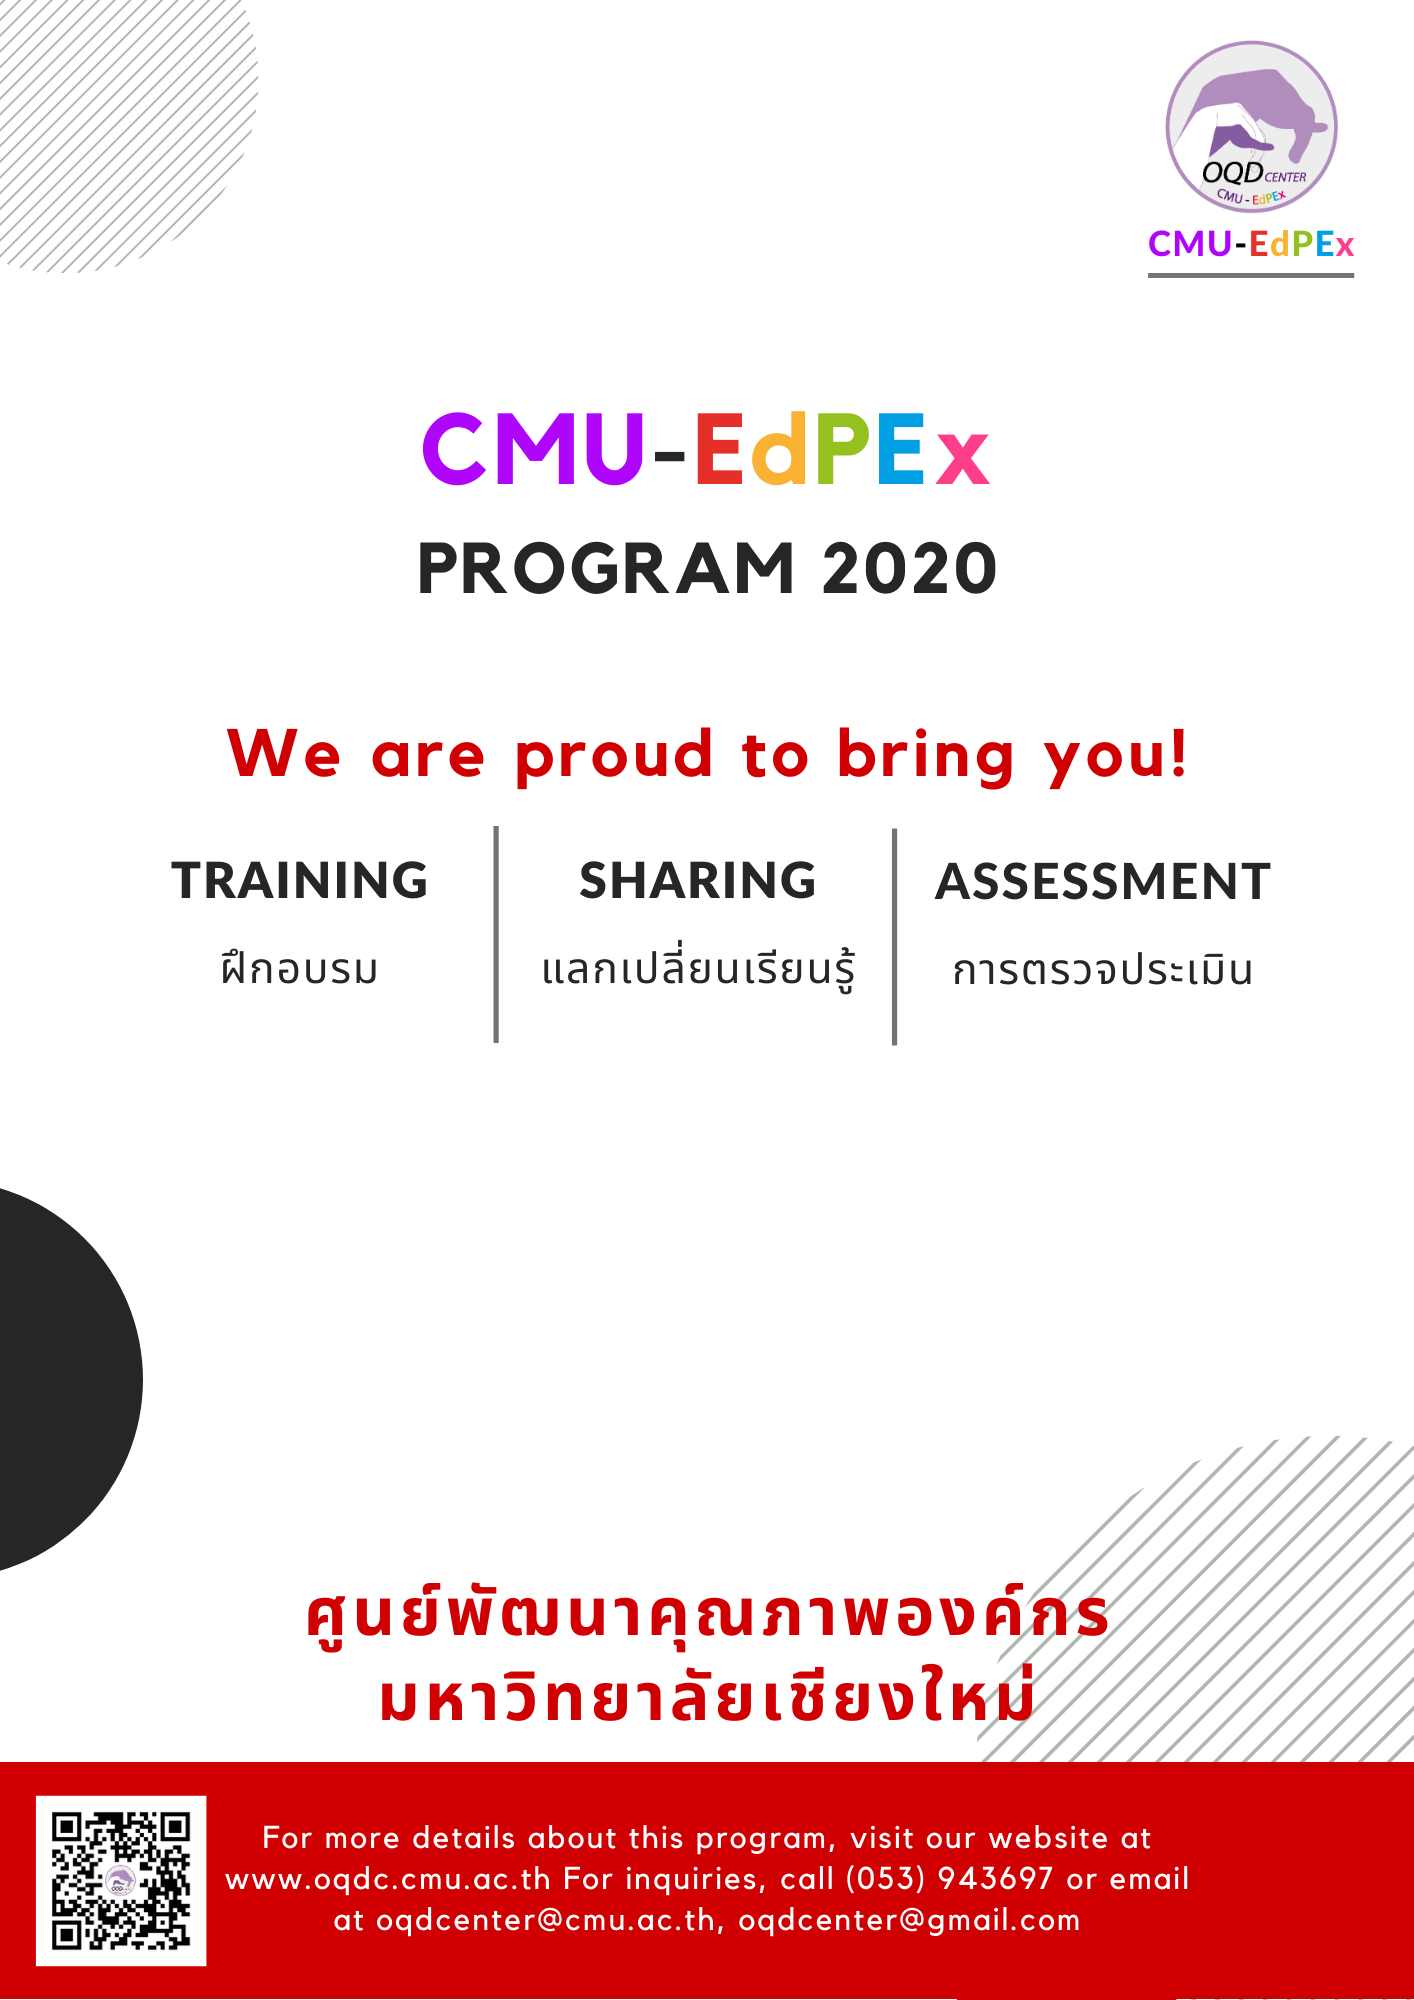 กิจกรรมการพัฒนาคุณภาพองค์กร ตามแผนการดำเนินงาน CMU-EdPEx ประจำปี 2563